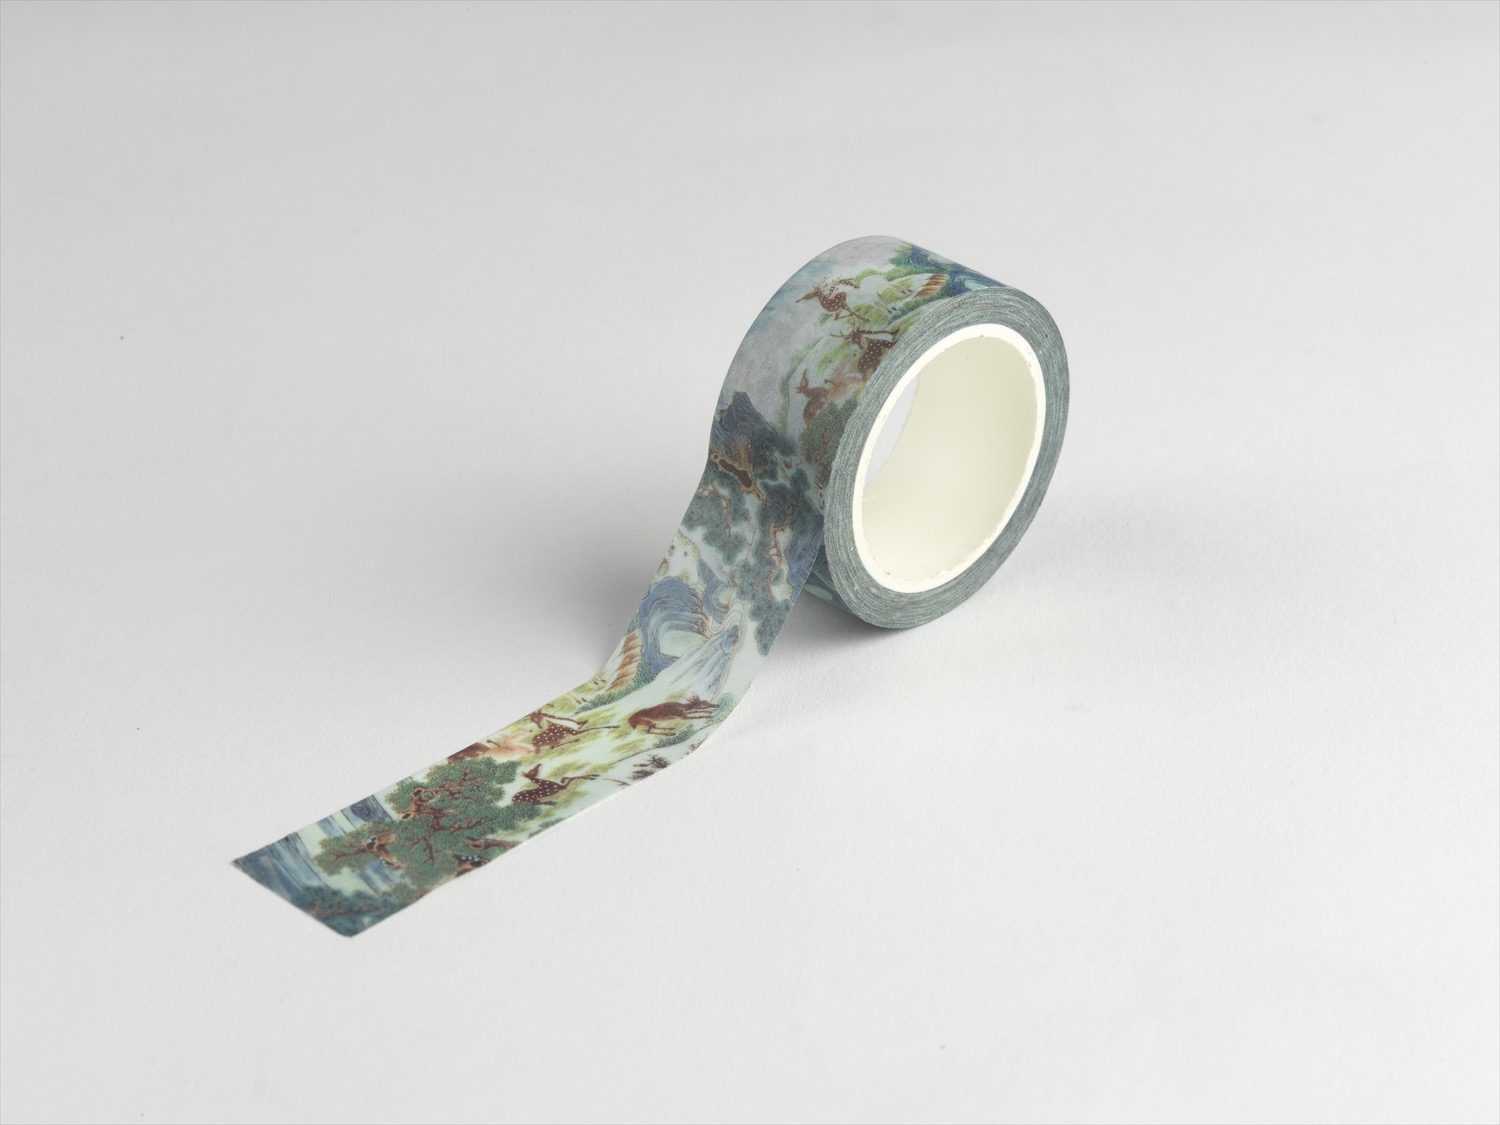 Washi Masking Tape: Vase with hundred deers design in fencai enamels